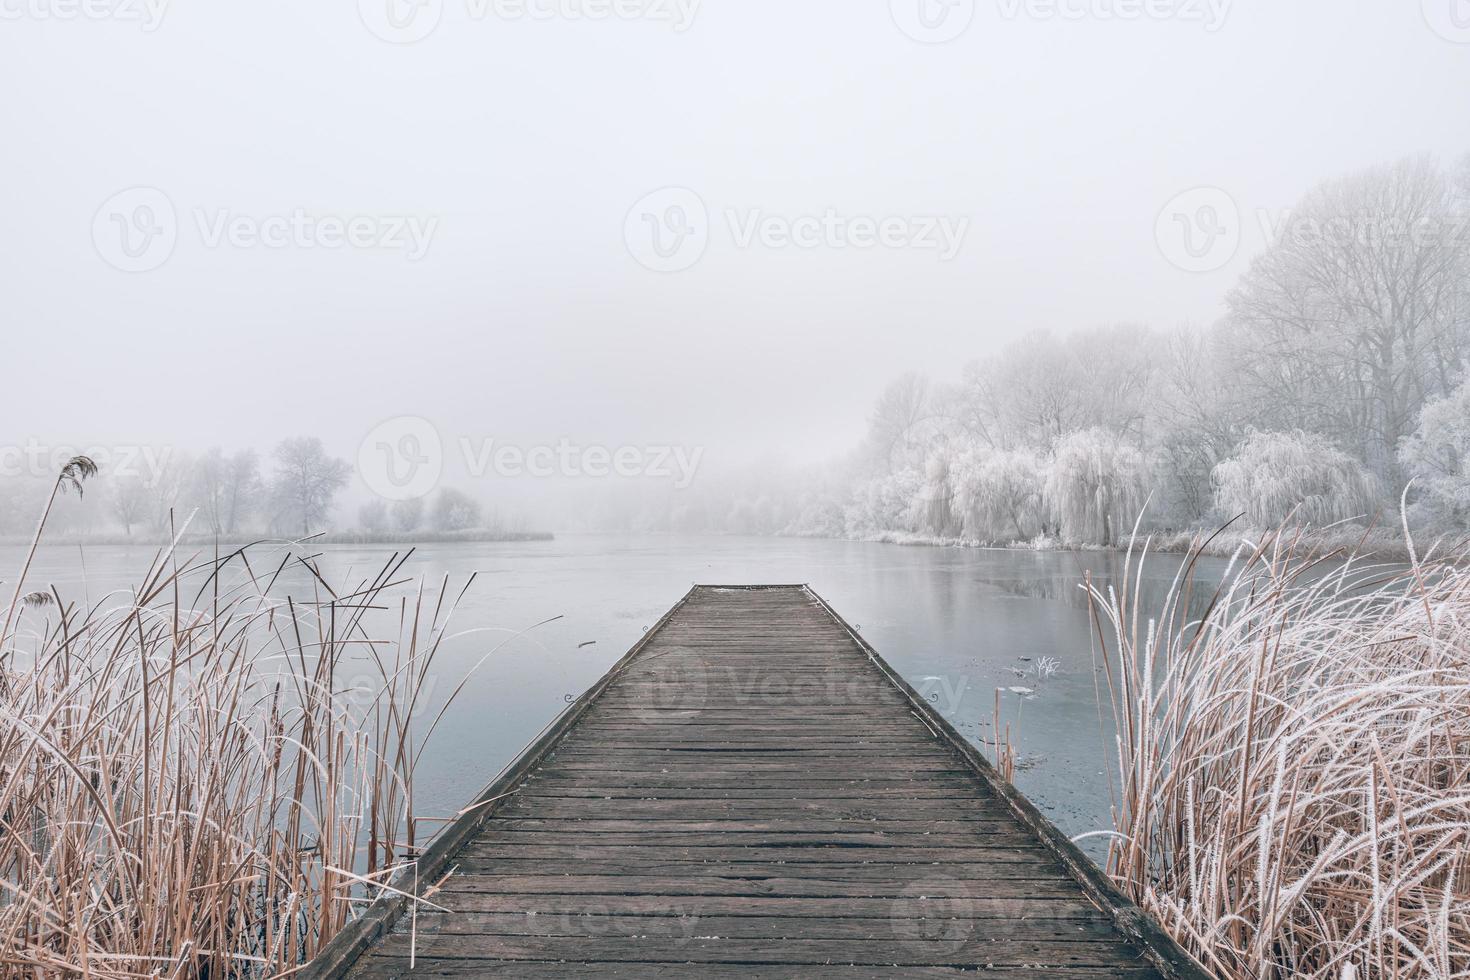 Abend Winterlandschaft. Holzsteg über einem schönen zugefrorenen See. Bäume mit Frost, ruhige saisonale Winterlandschaft. friedliche, weiße Aussicht foto